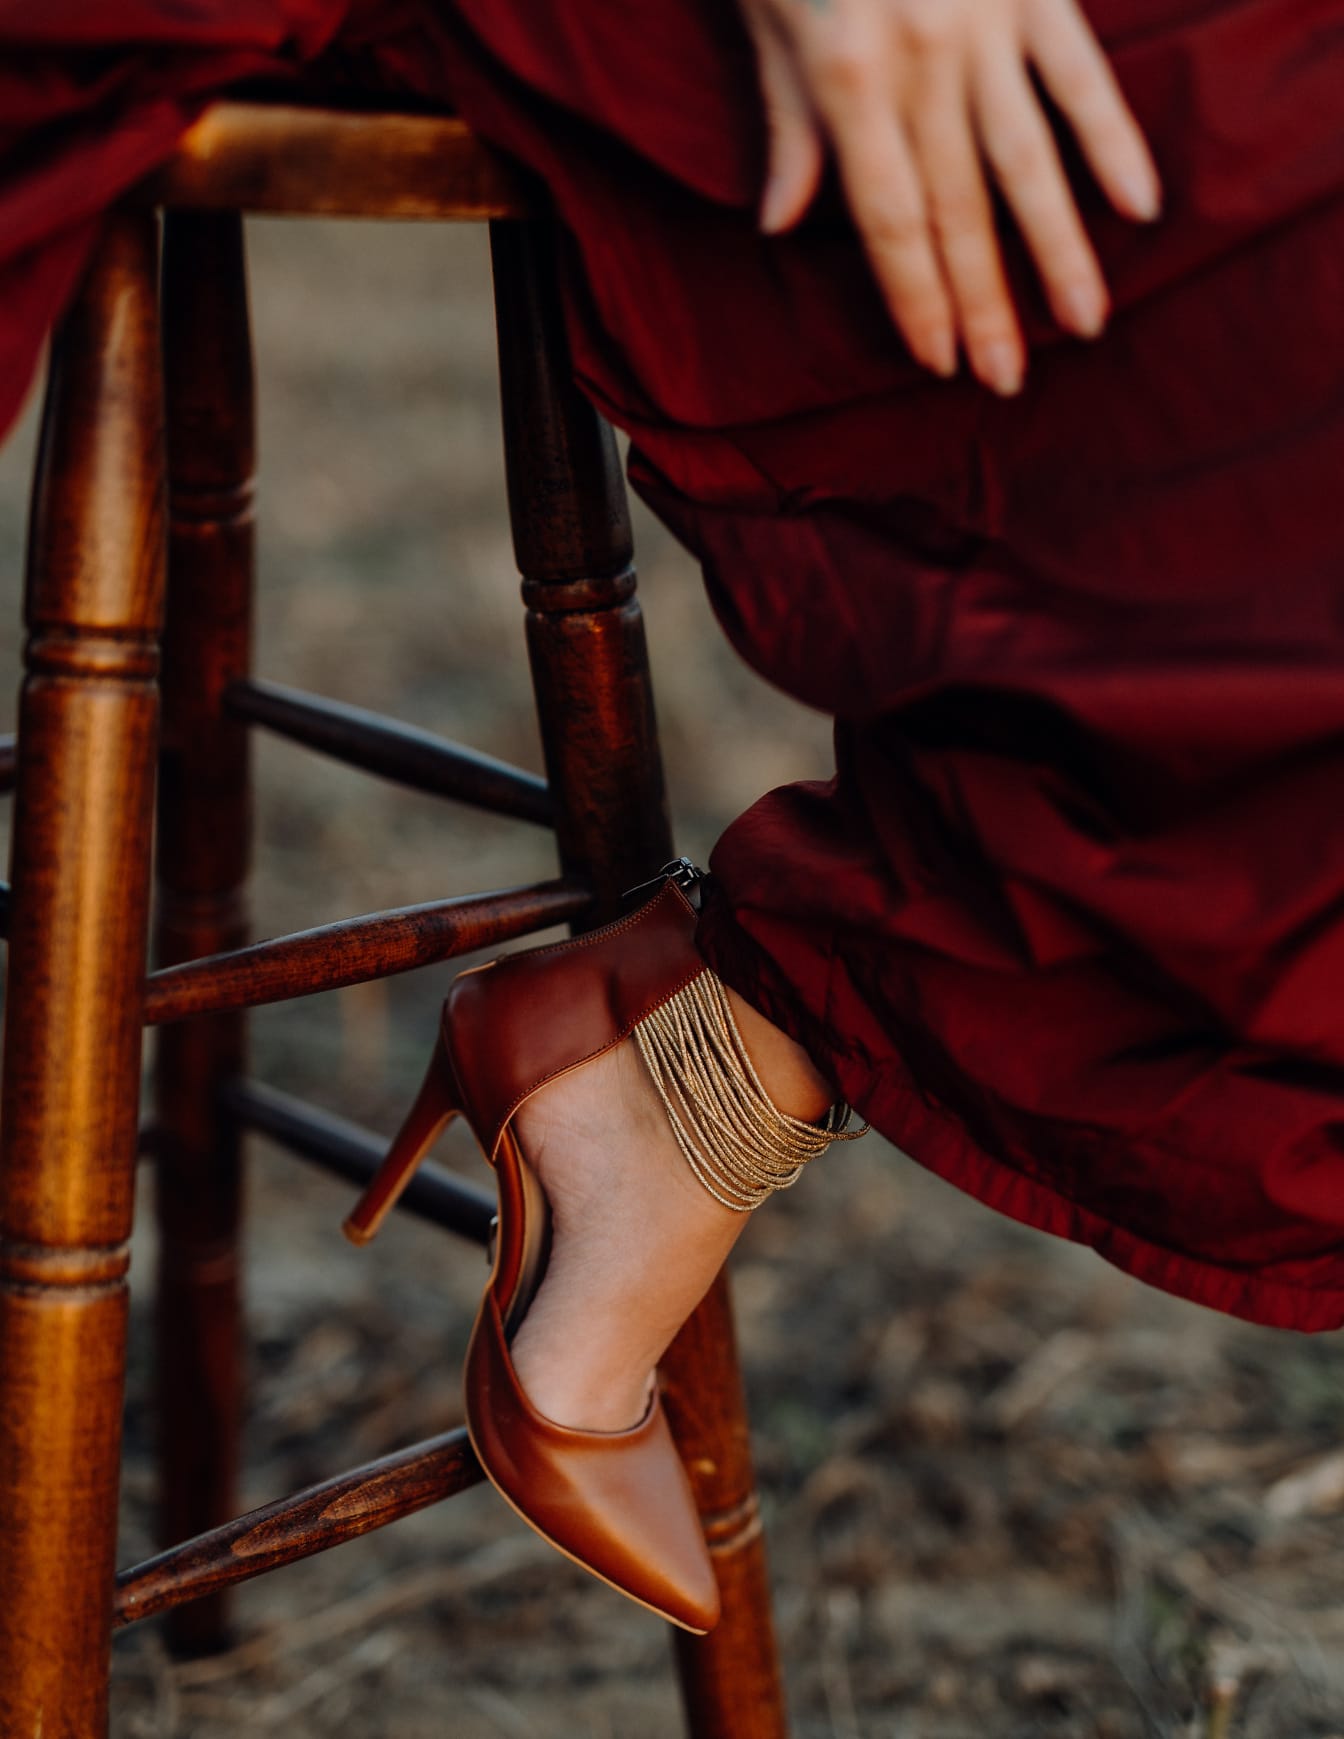 Đôi dép đỏ sẫm trên chân của phụ nữ mặc váy đỏ ngồi trên ghế đẩu